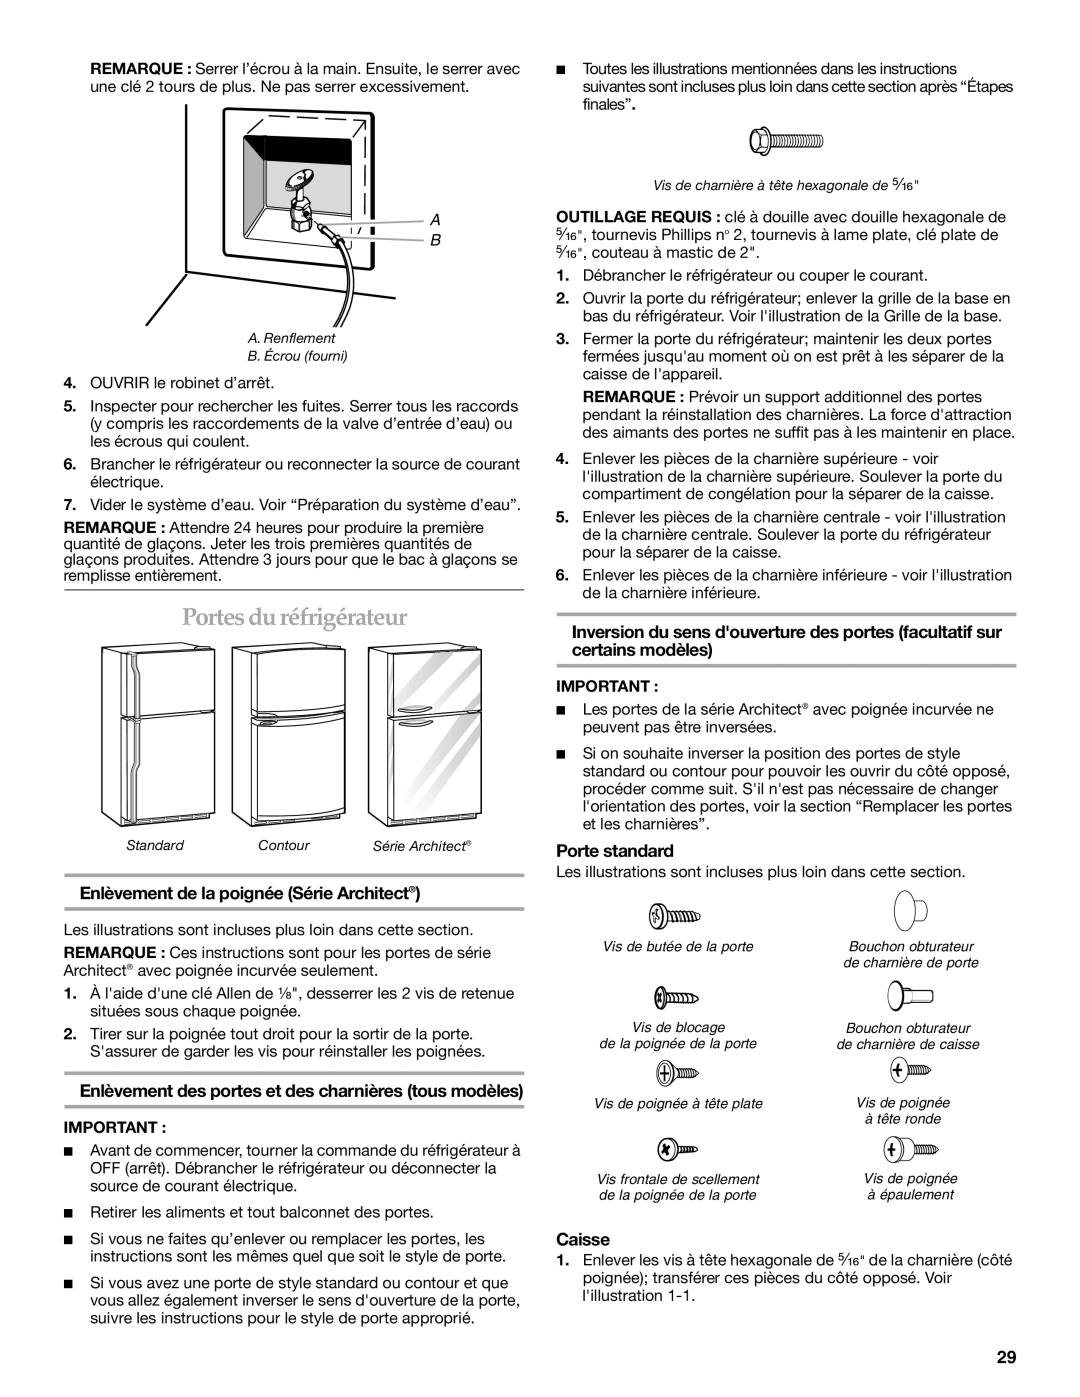 KitchenAid TOP-MOUNT REFRIGERATOR manual Portes du réfrigérateur, Enlèvement de la poignée Série Architect, Porte standard 